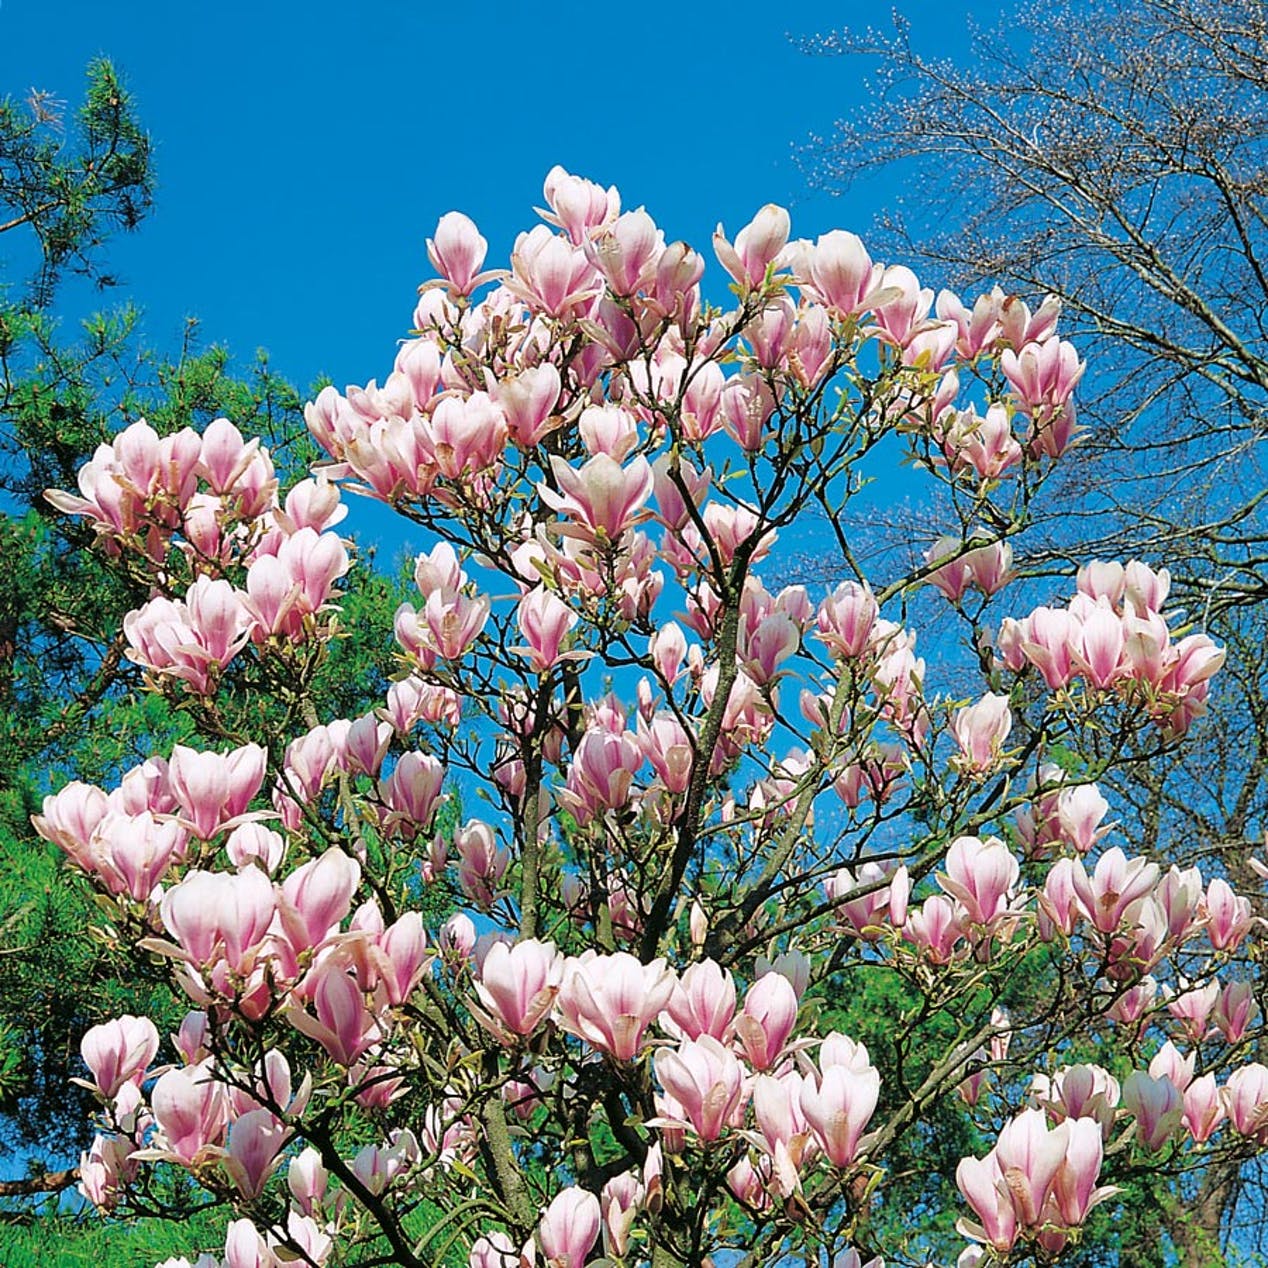 Magnolia blommar på försommaren